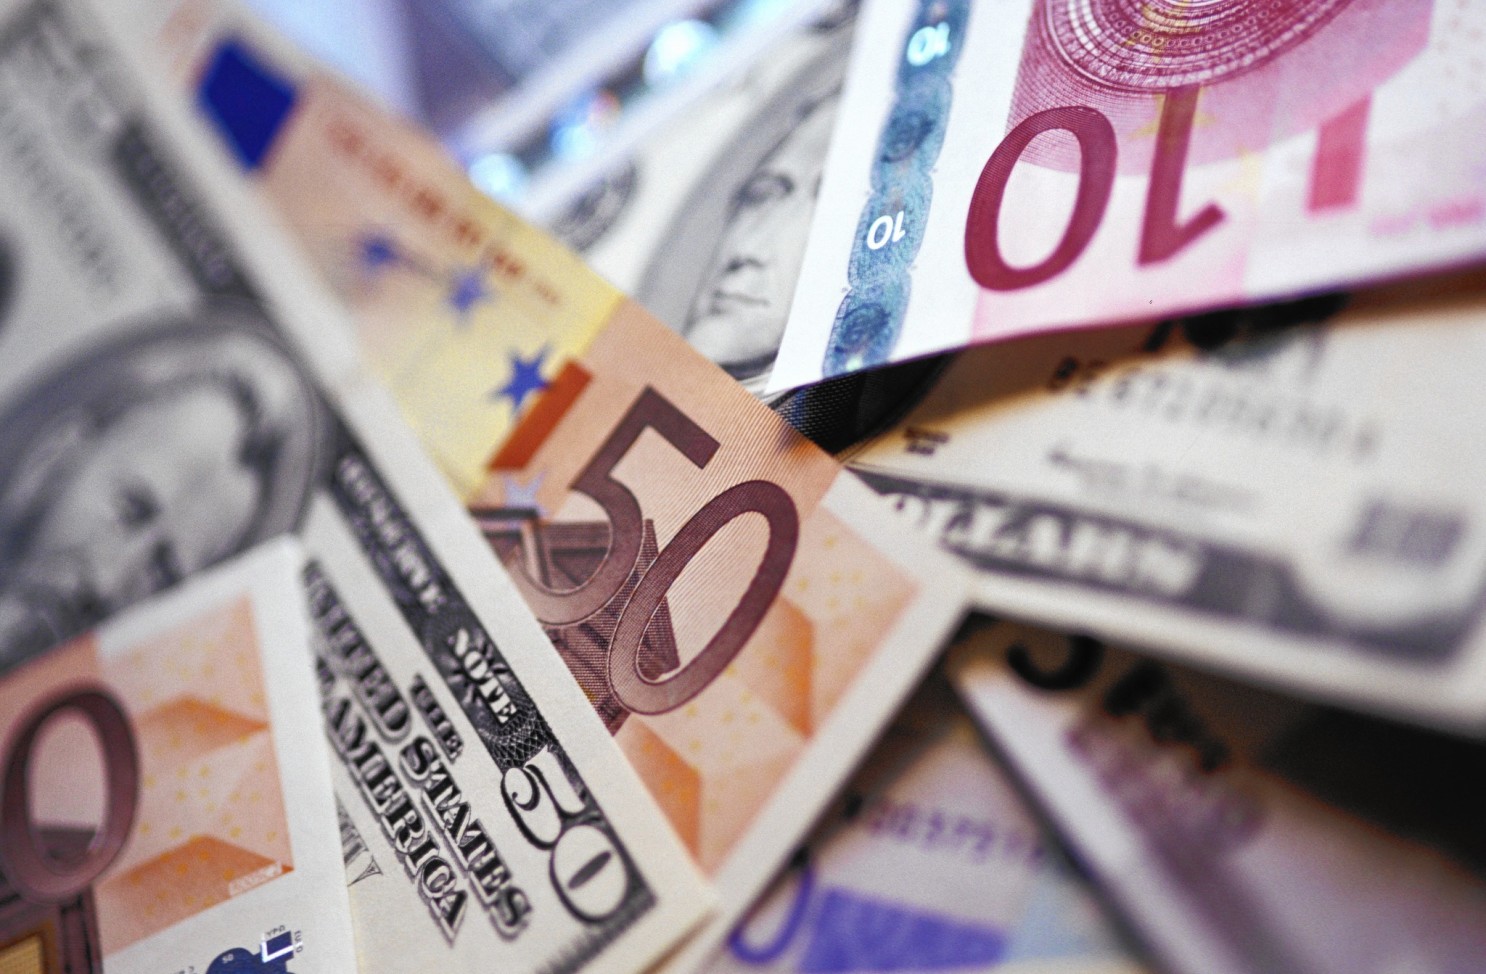 La divisa europea se fortaleció frente al dólar. Superó este viernes el cambio de 1,22 dólares en el mercado de divisas de Fráncfort (Alemania)